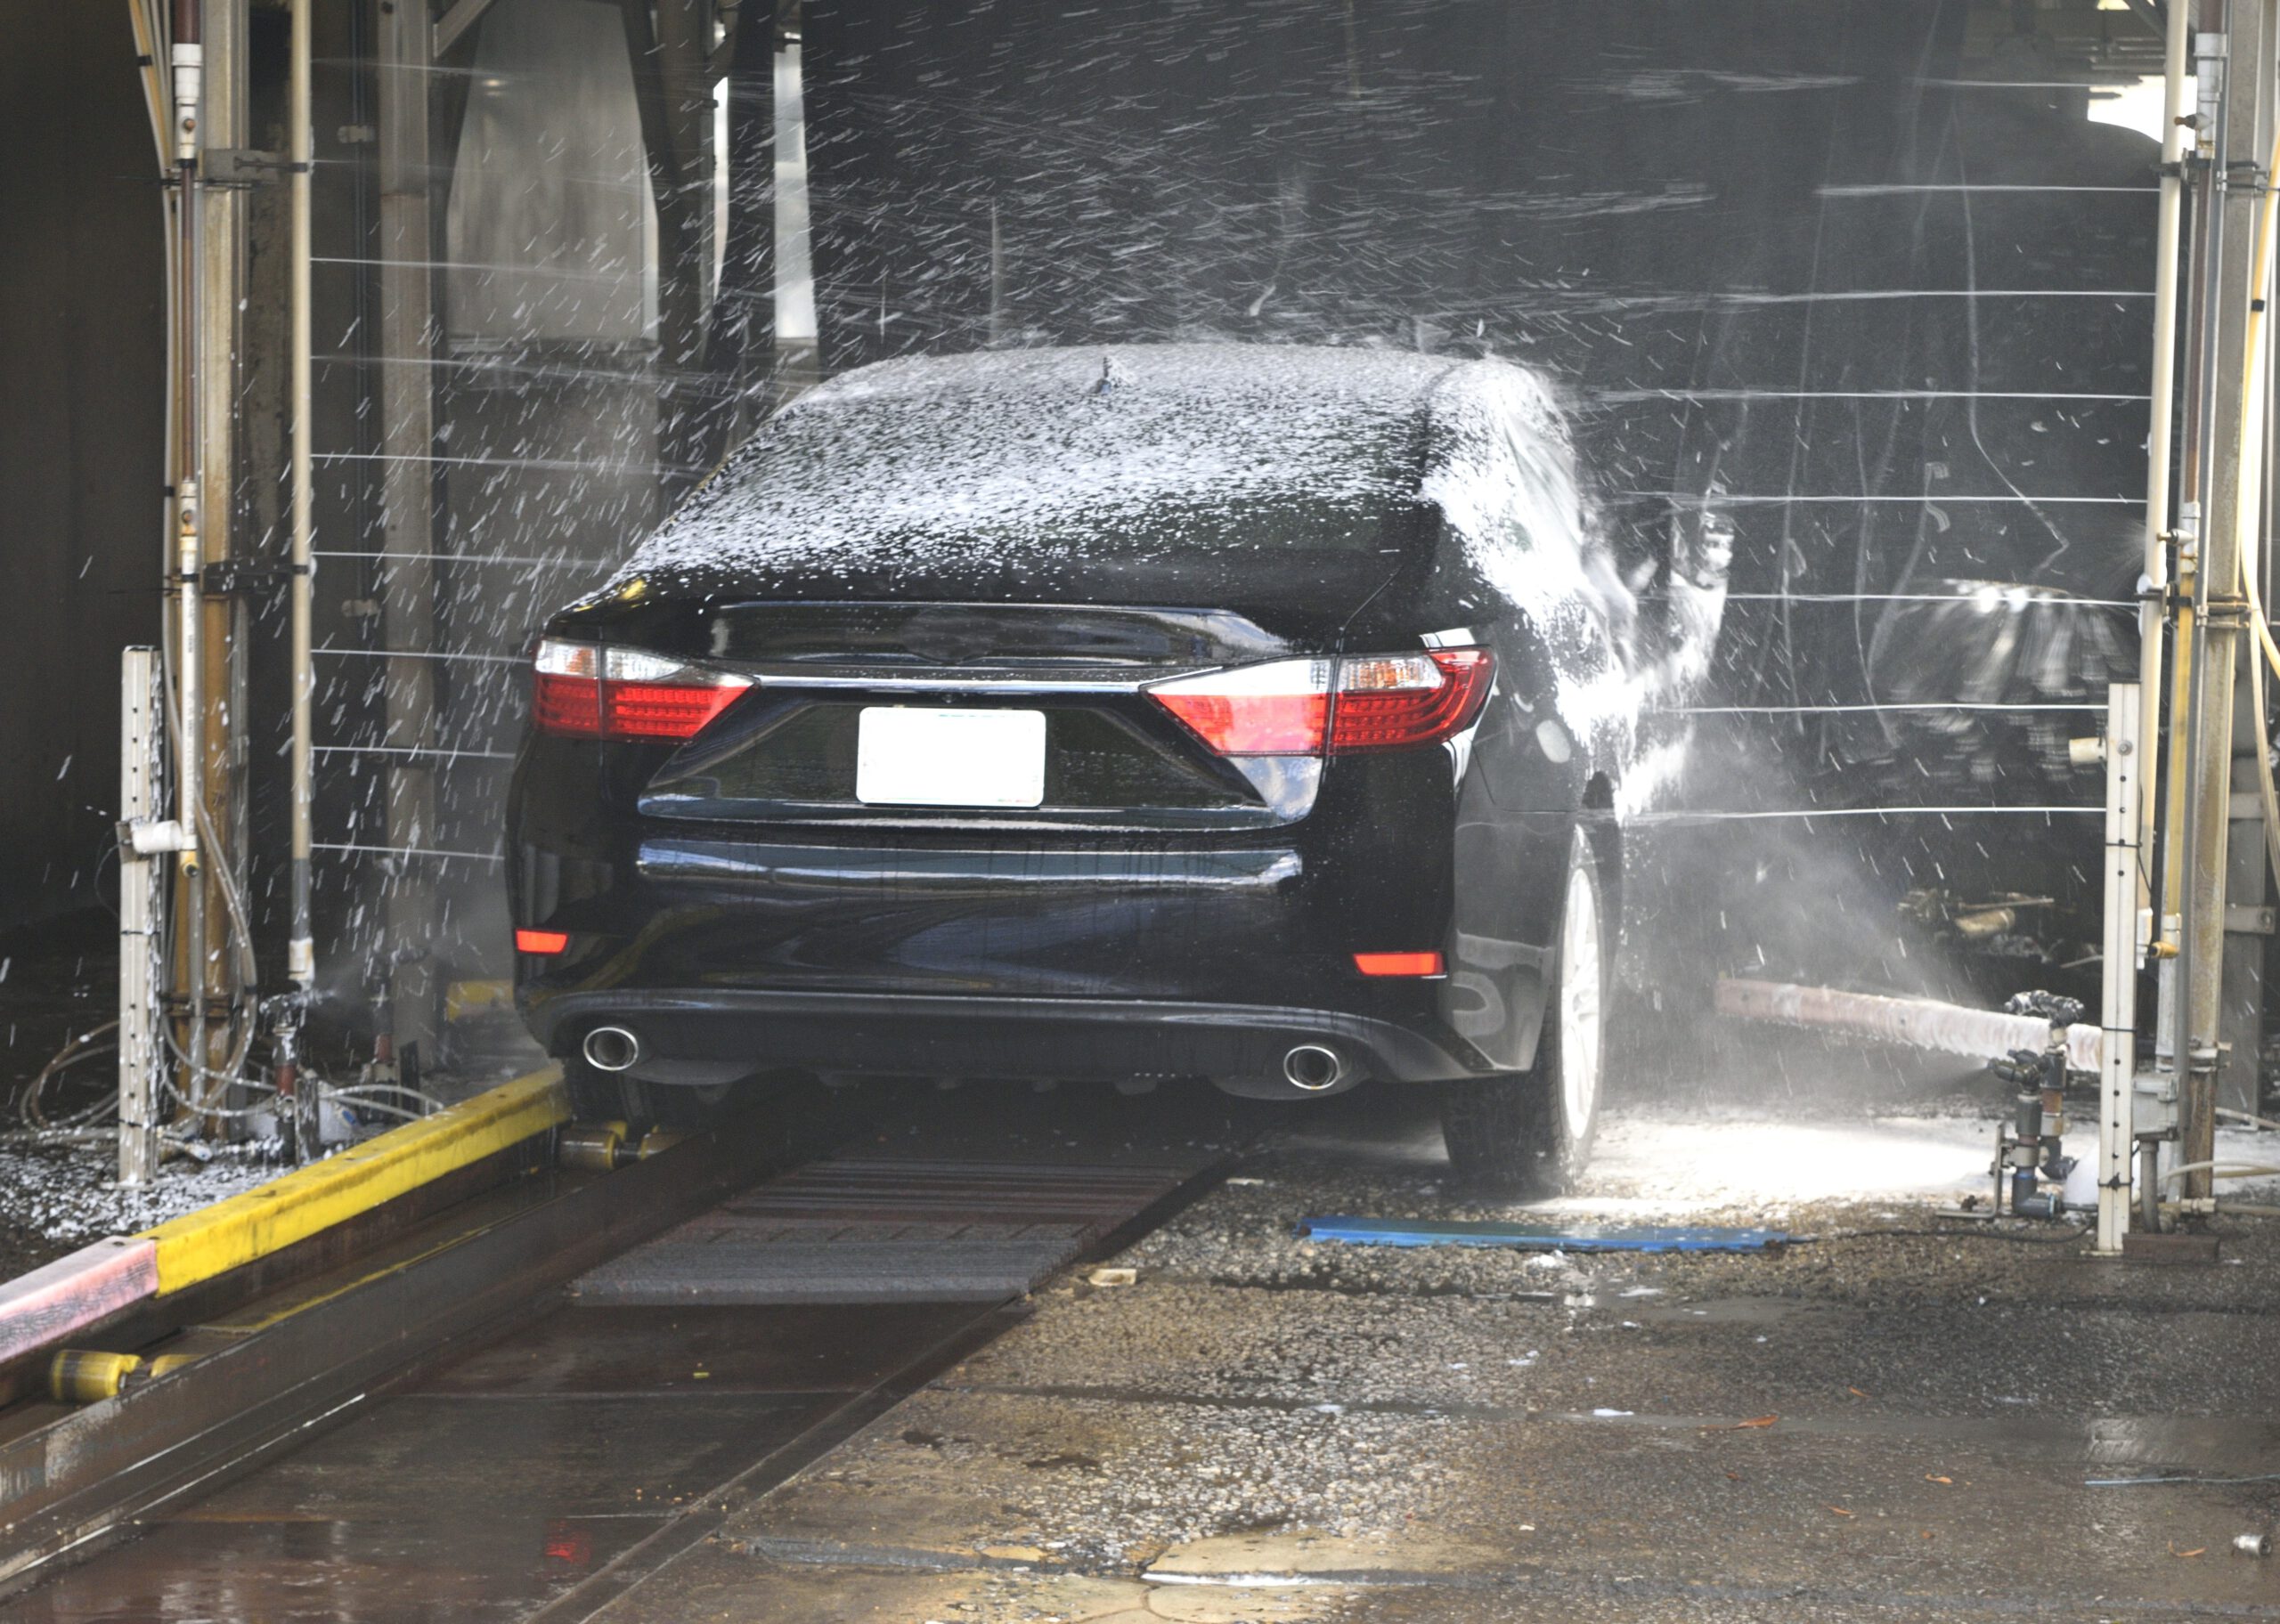 Czarny samochód na automatycznej myjni samochodowej podczas mycia